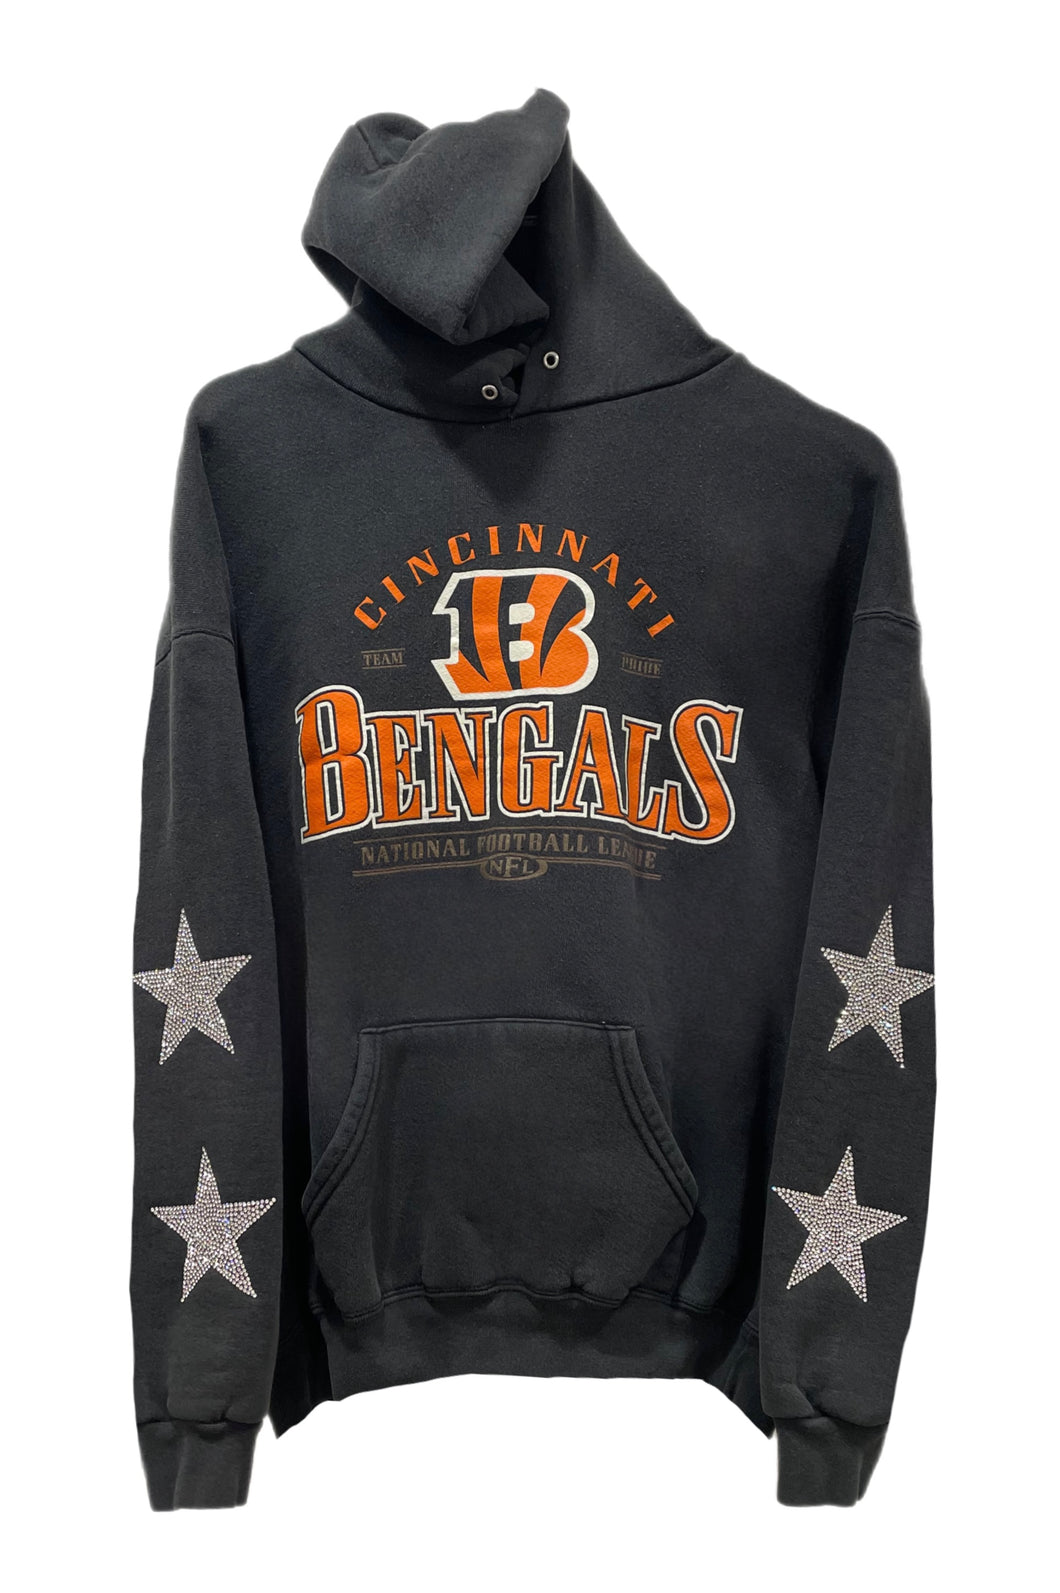 Cincinnati Bengals, NFL One of a KIND Vintage Hoodie with Crystal Star Design